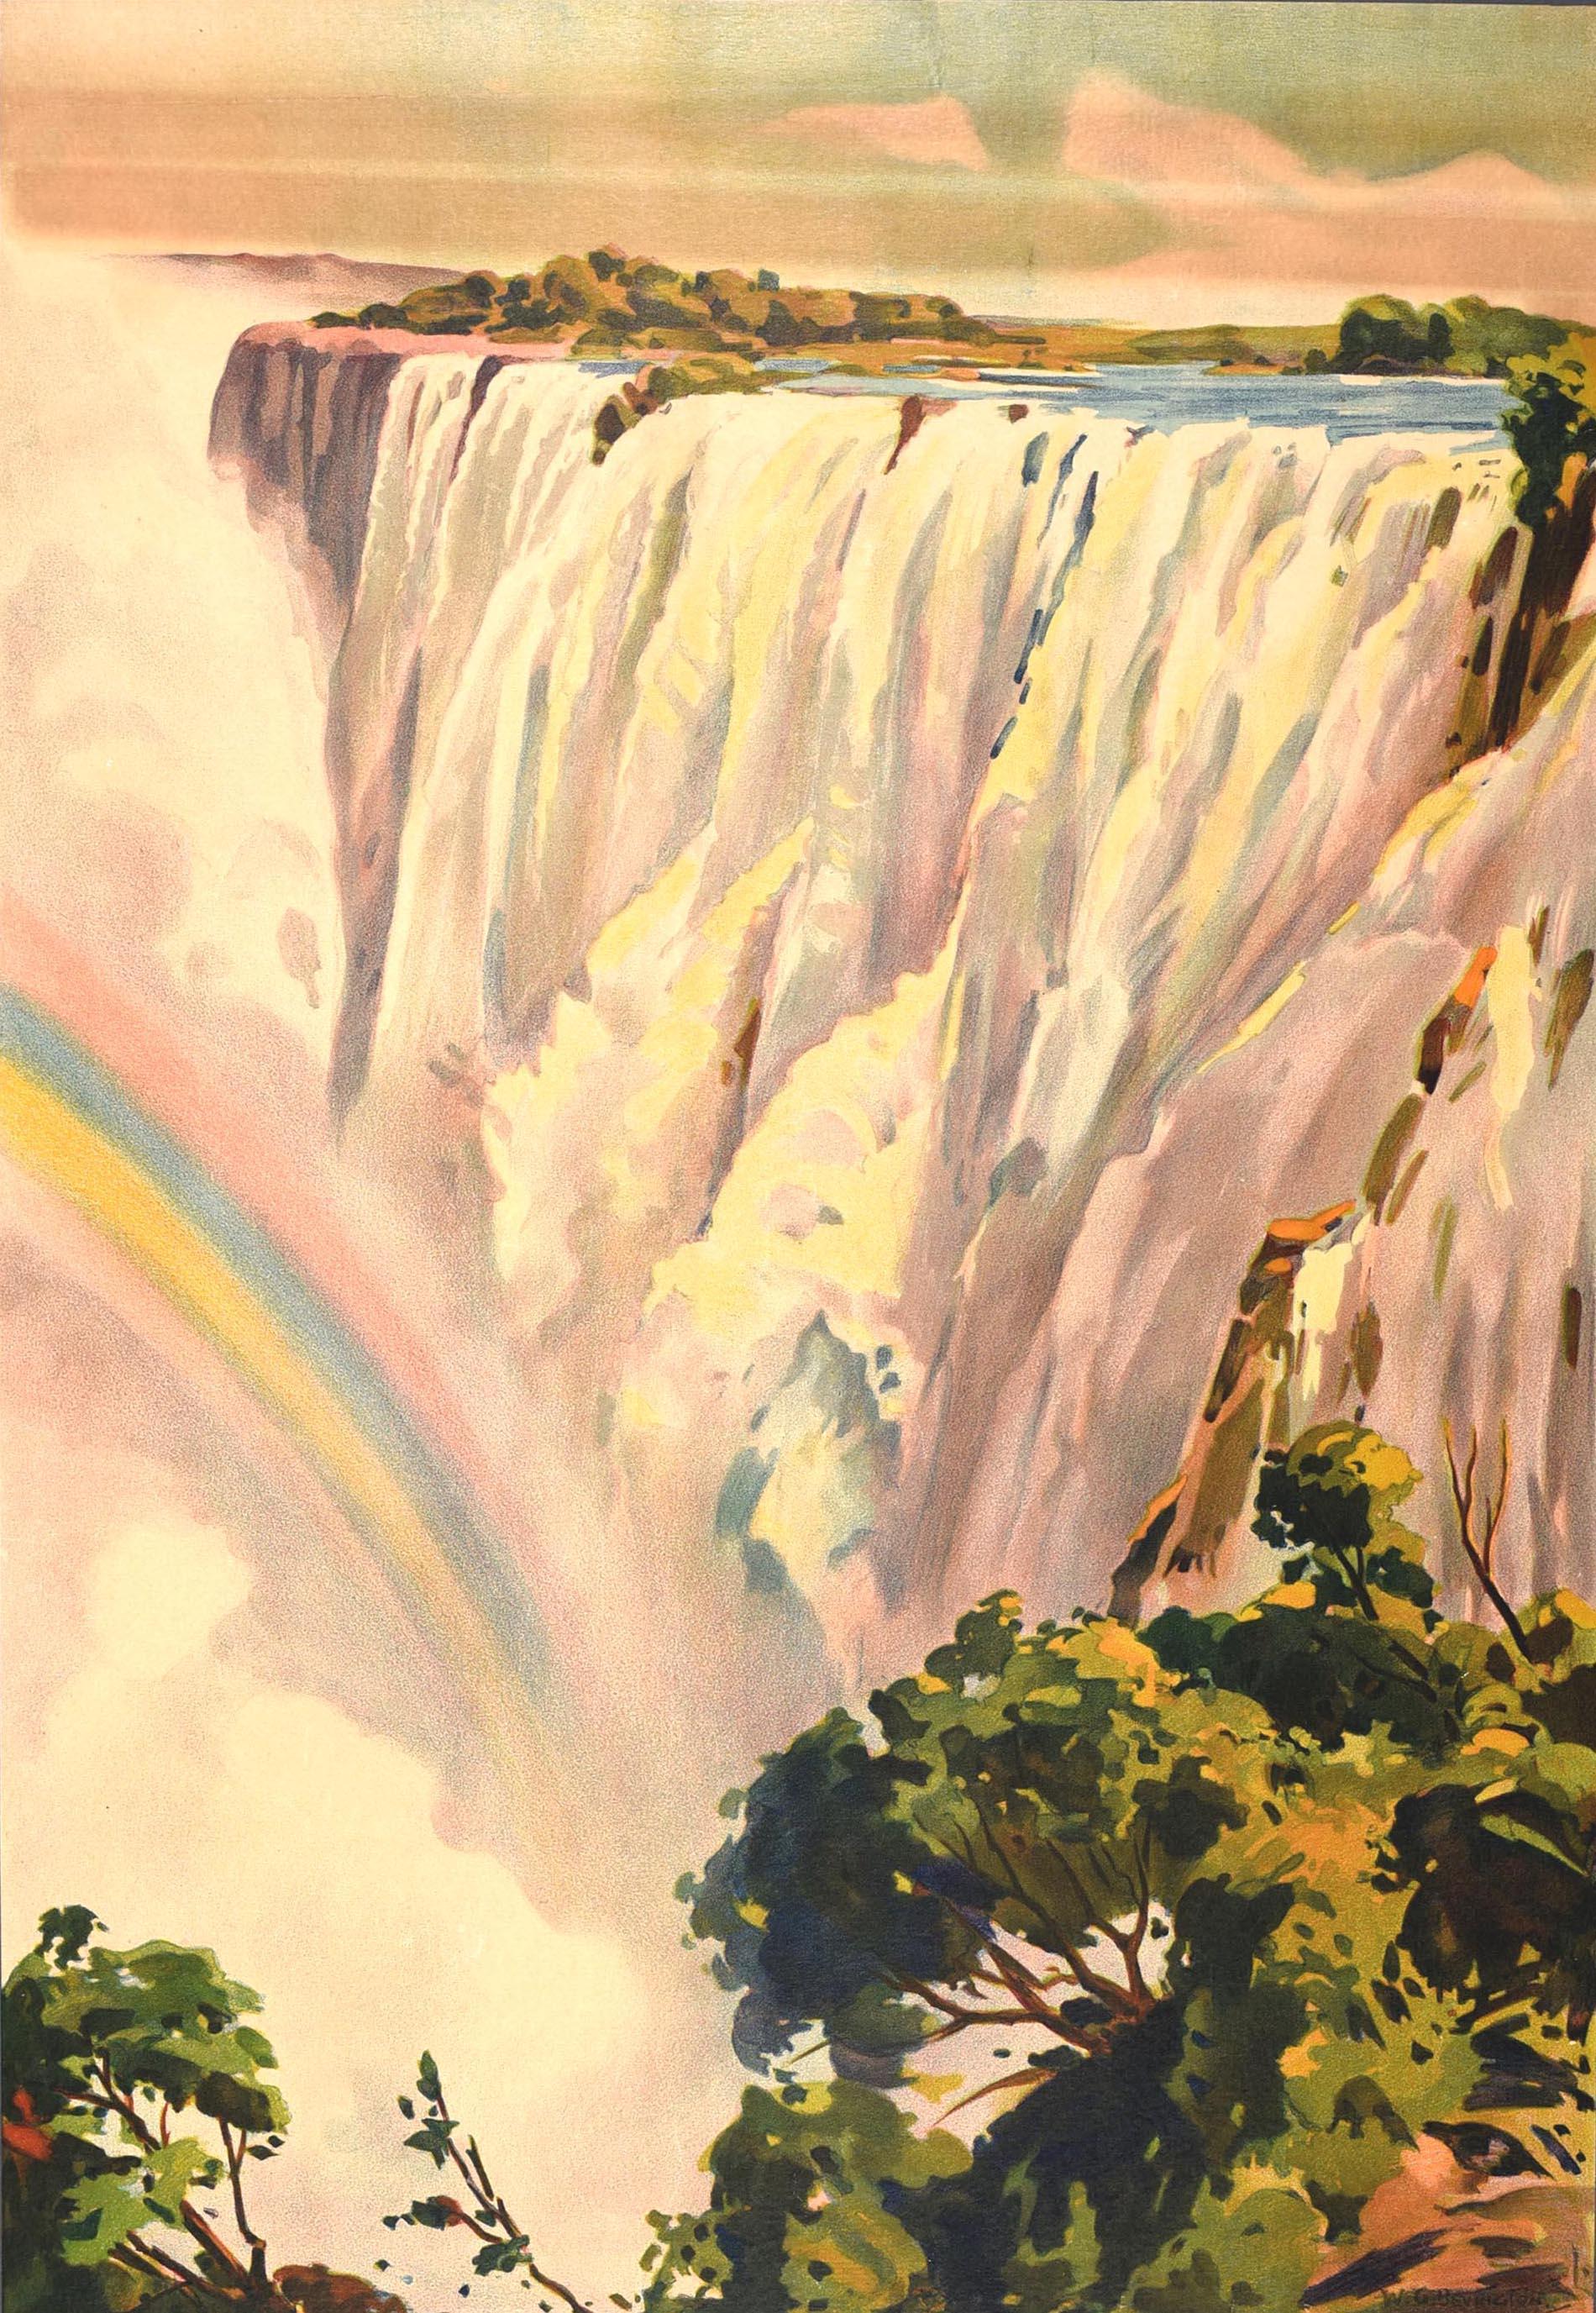 Original Vintage-Reiseplakat - Victoria Falls more than a mile wide Southern Rhodesia - mit einem landschaftlichen Kunstwerk von William George Bevington (1881-1953), das einen Regenbogen zeigt, der aus dem kaskadenartigen Wasser am Fuße des